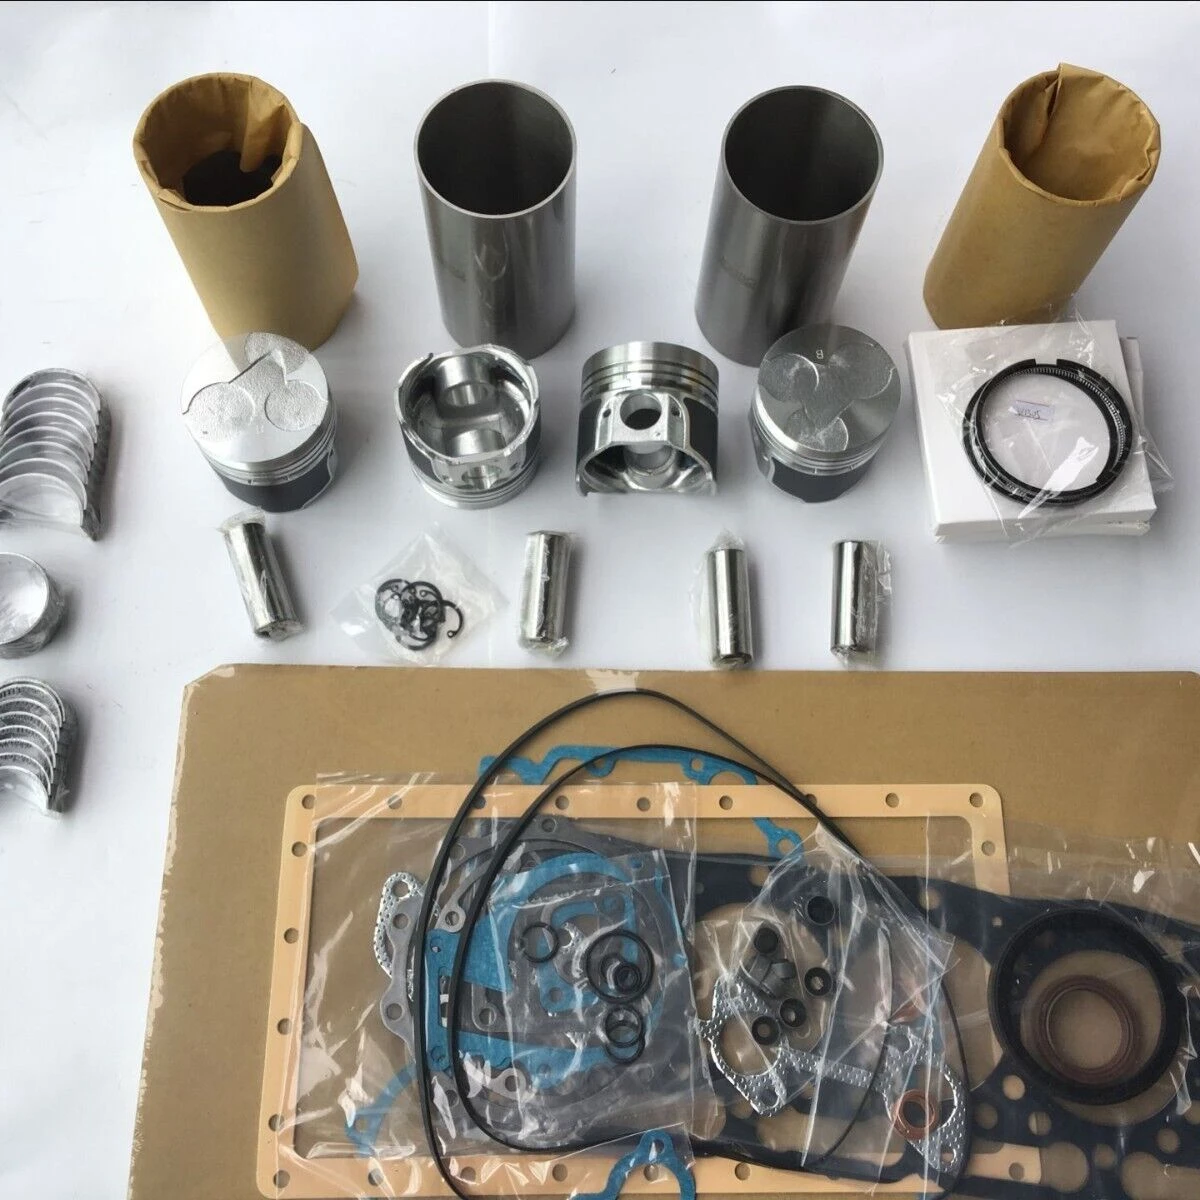 

For kubota V1505 rebuild kit piston liner cylinder gasket big small end bearing